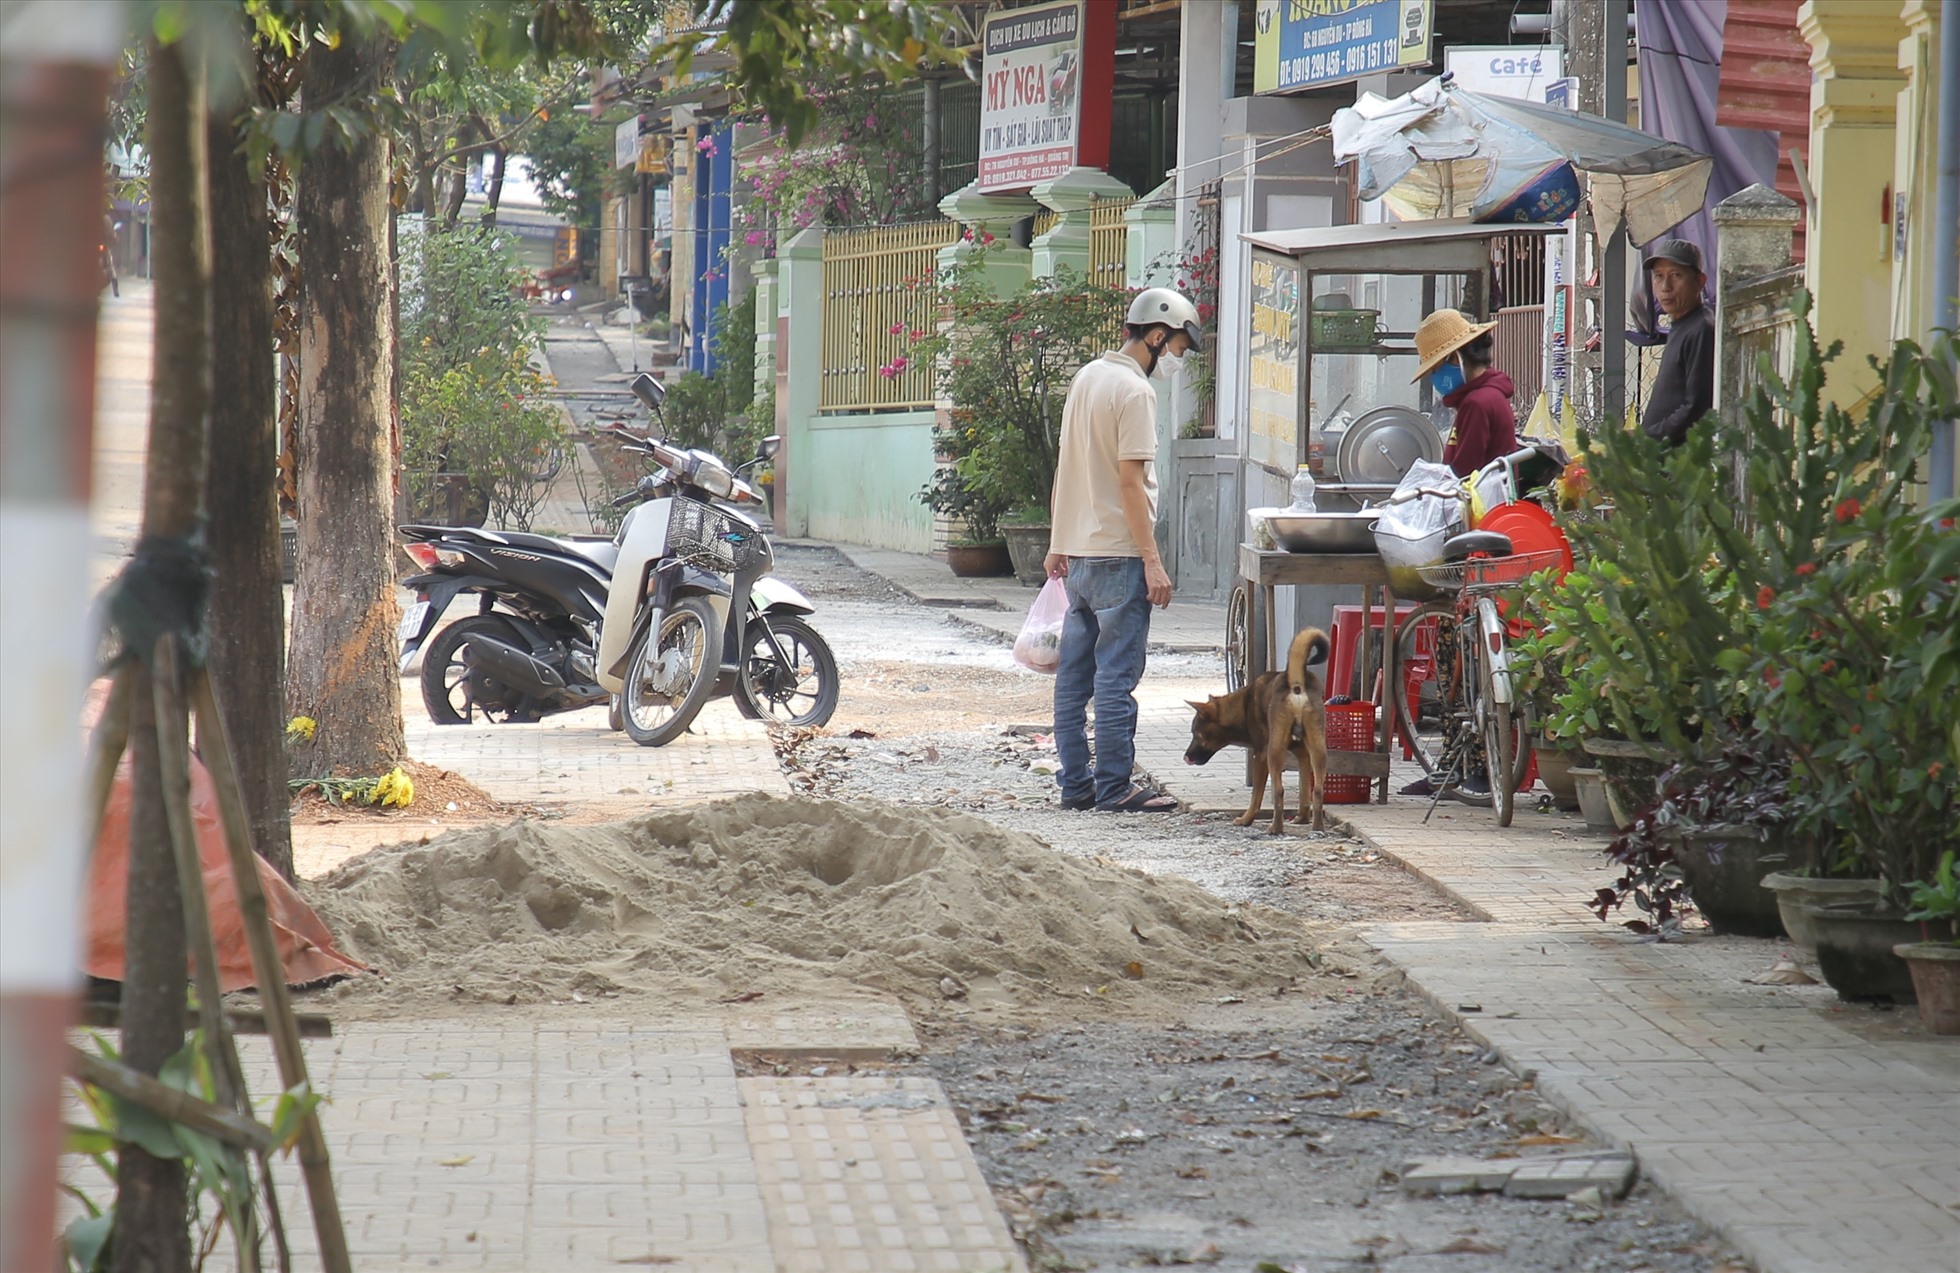 1 đoạn vỉa hè được đào lên để chôn ống nước trên đường Nguyễn Du. Ảnh: Hưng Thơ.